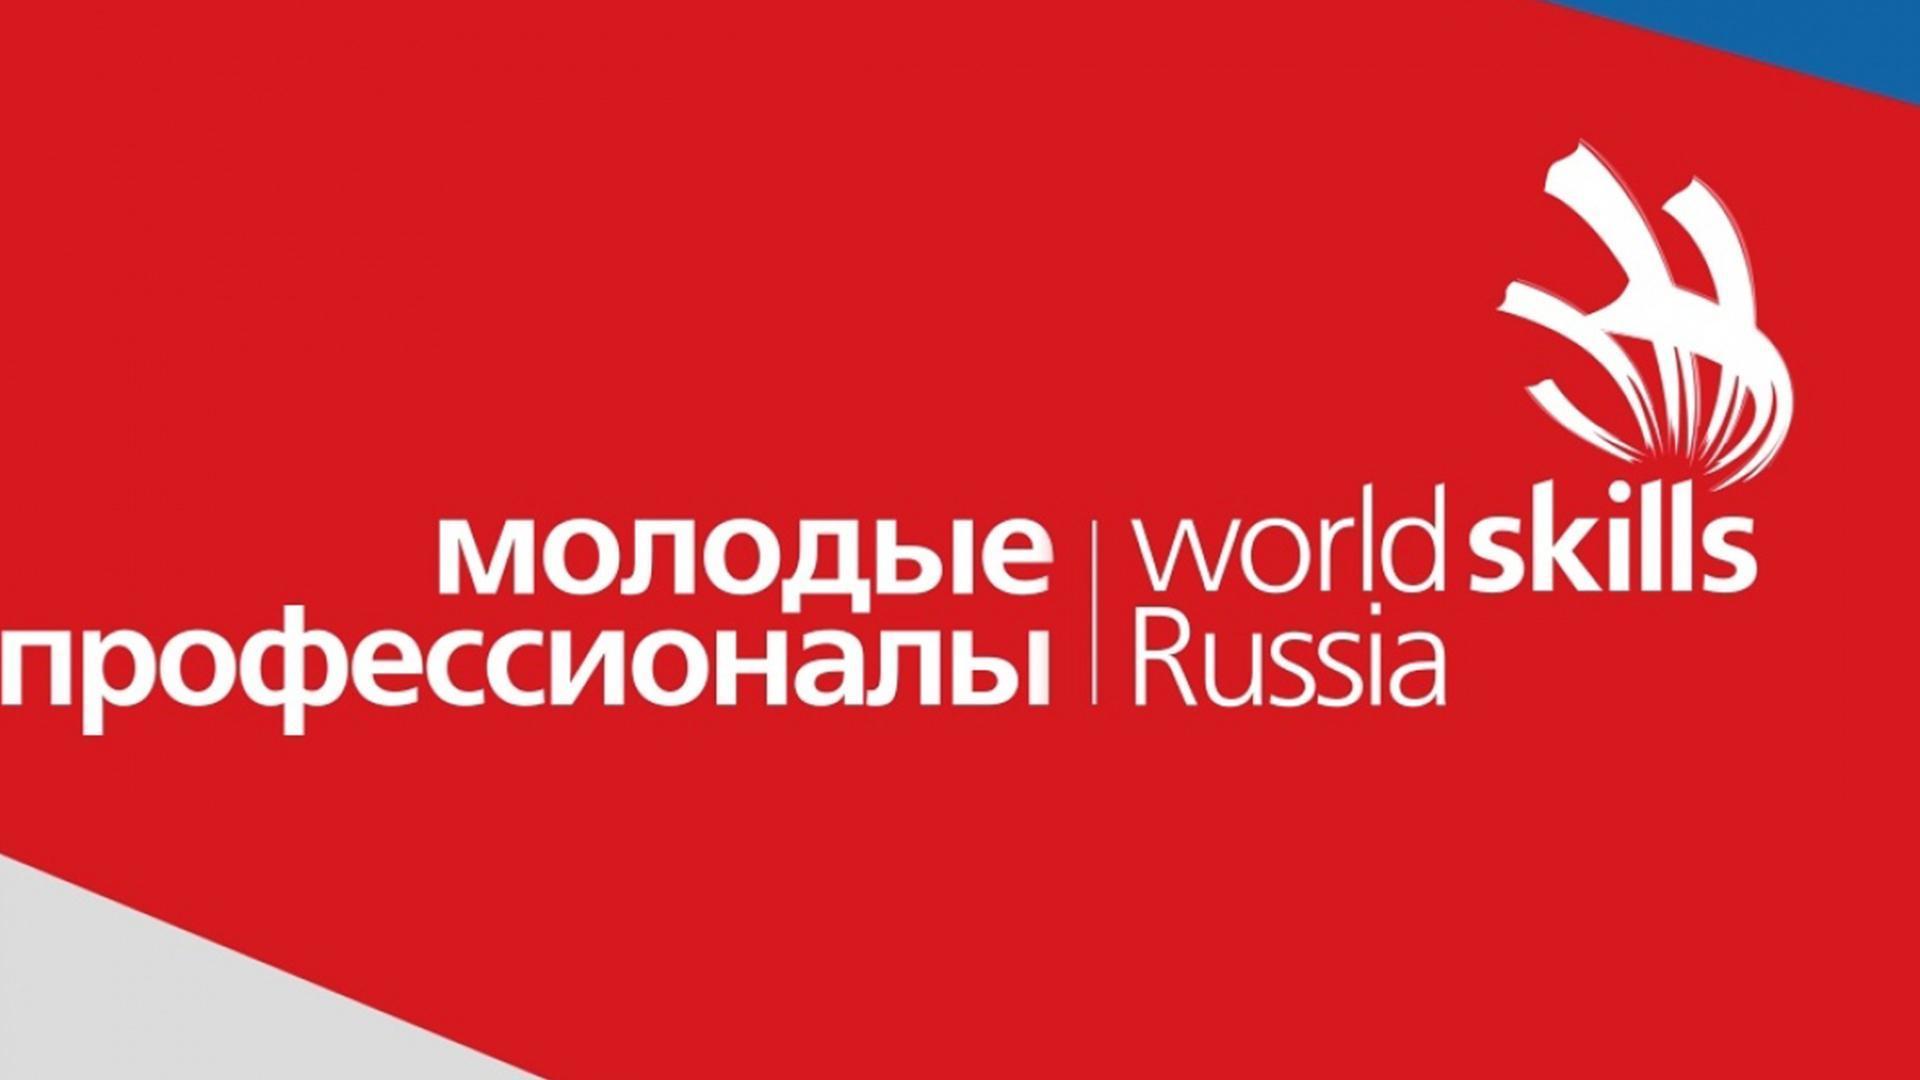 4 декабря наша компания приняла участие в VI Открытом Региональном чемпионате «Молодые профессионалы» (WORLDSKILLS RUSSIA).